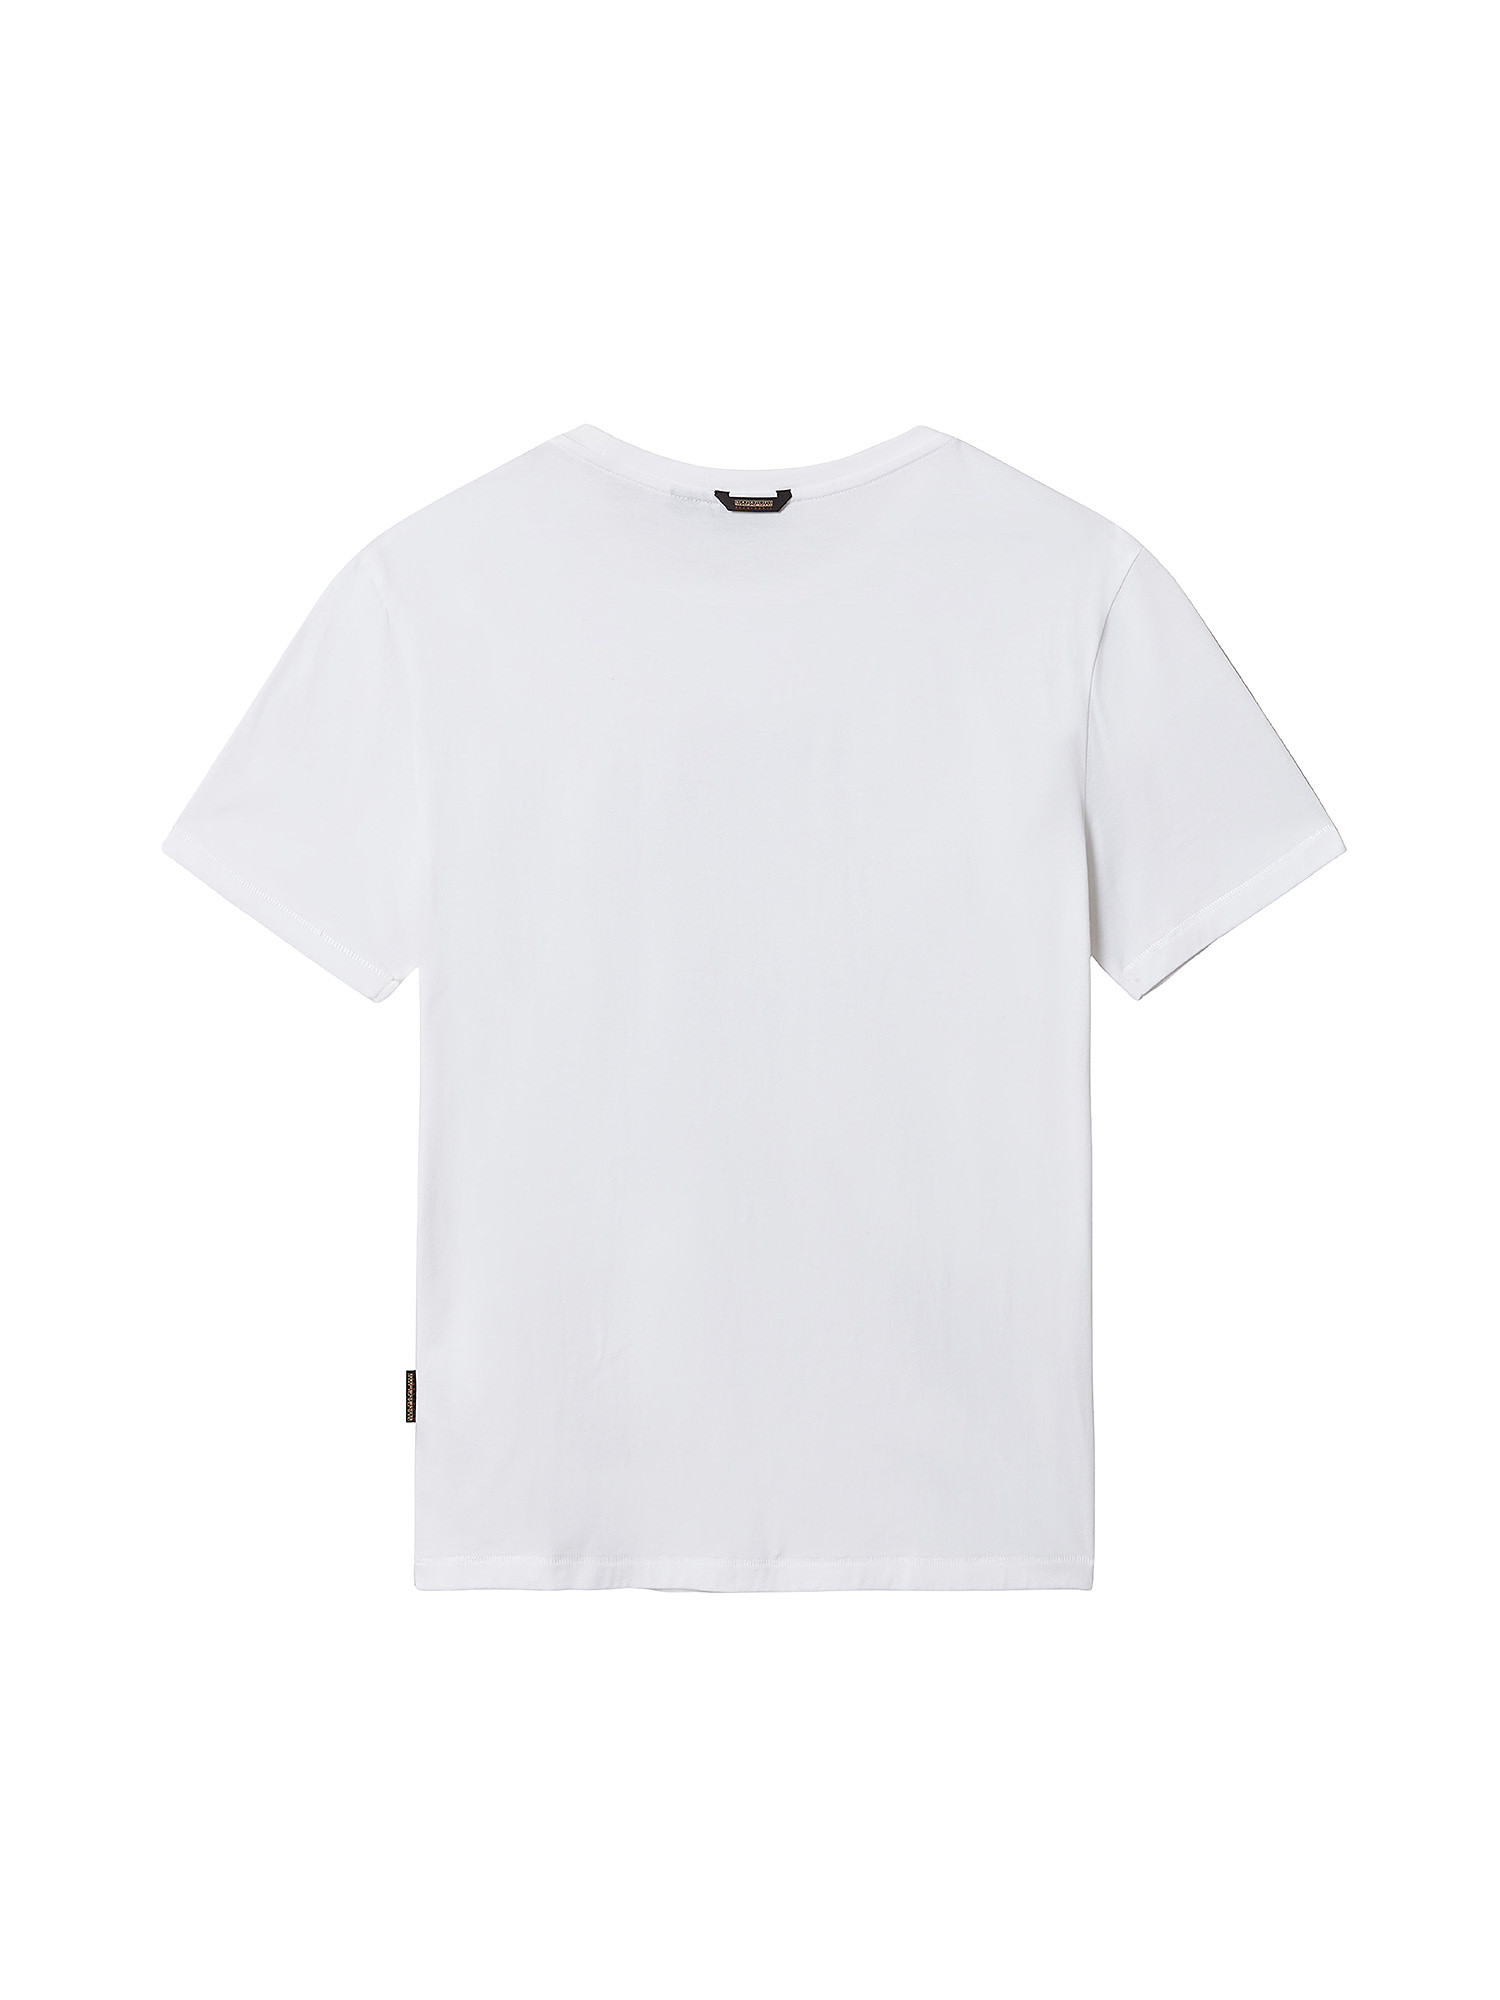 Short Sleeve T-Shirt Turin, White, large image number 1